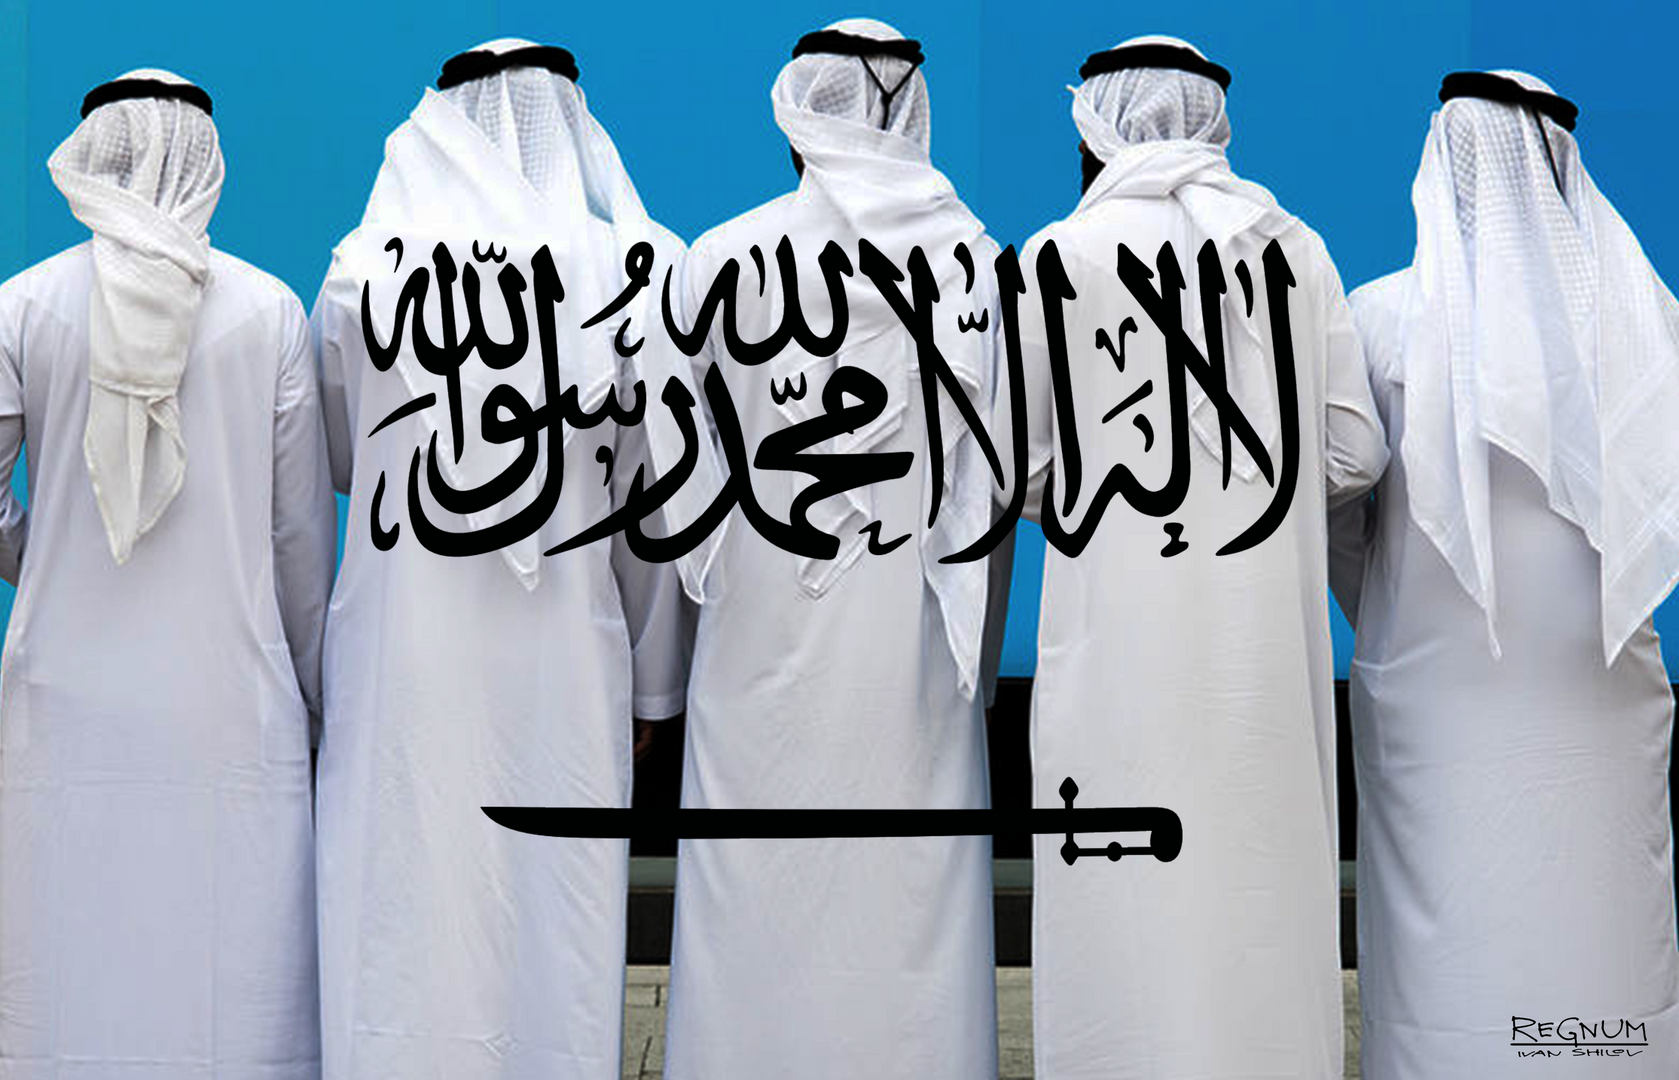 Саудовская Аравия женщины. Исламский экстремизм в Саудовской Аравии. Аравия спонсирует терроризм.